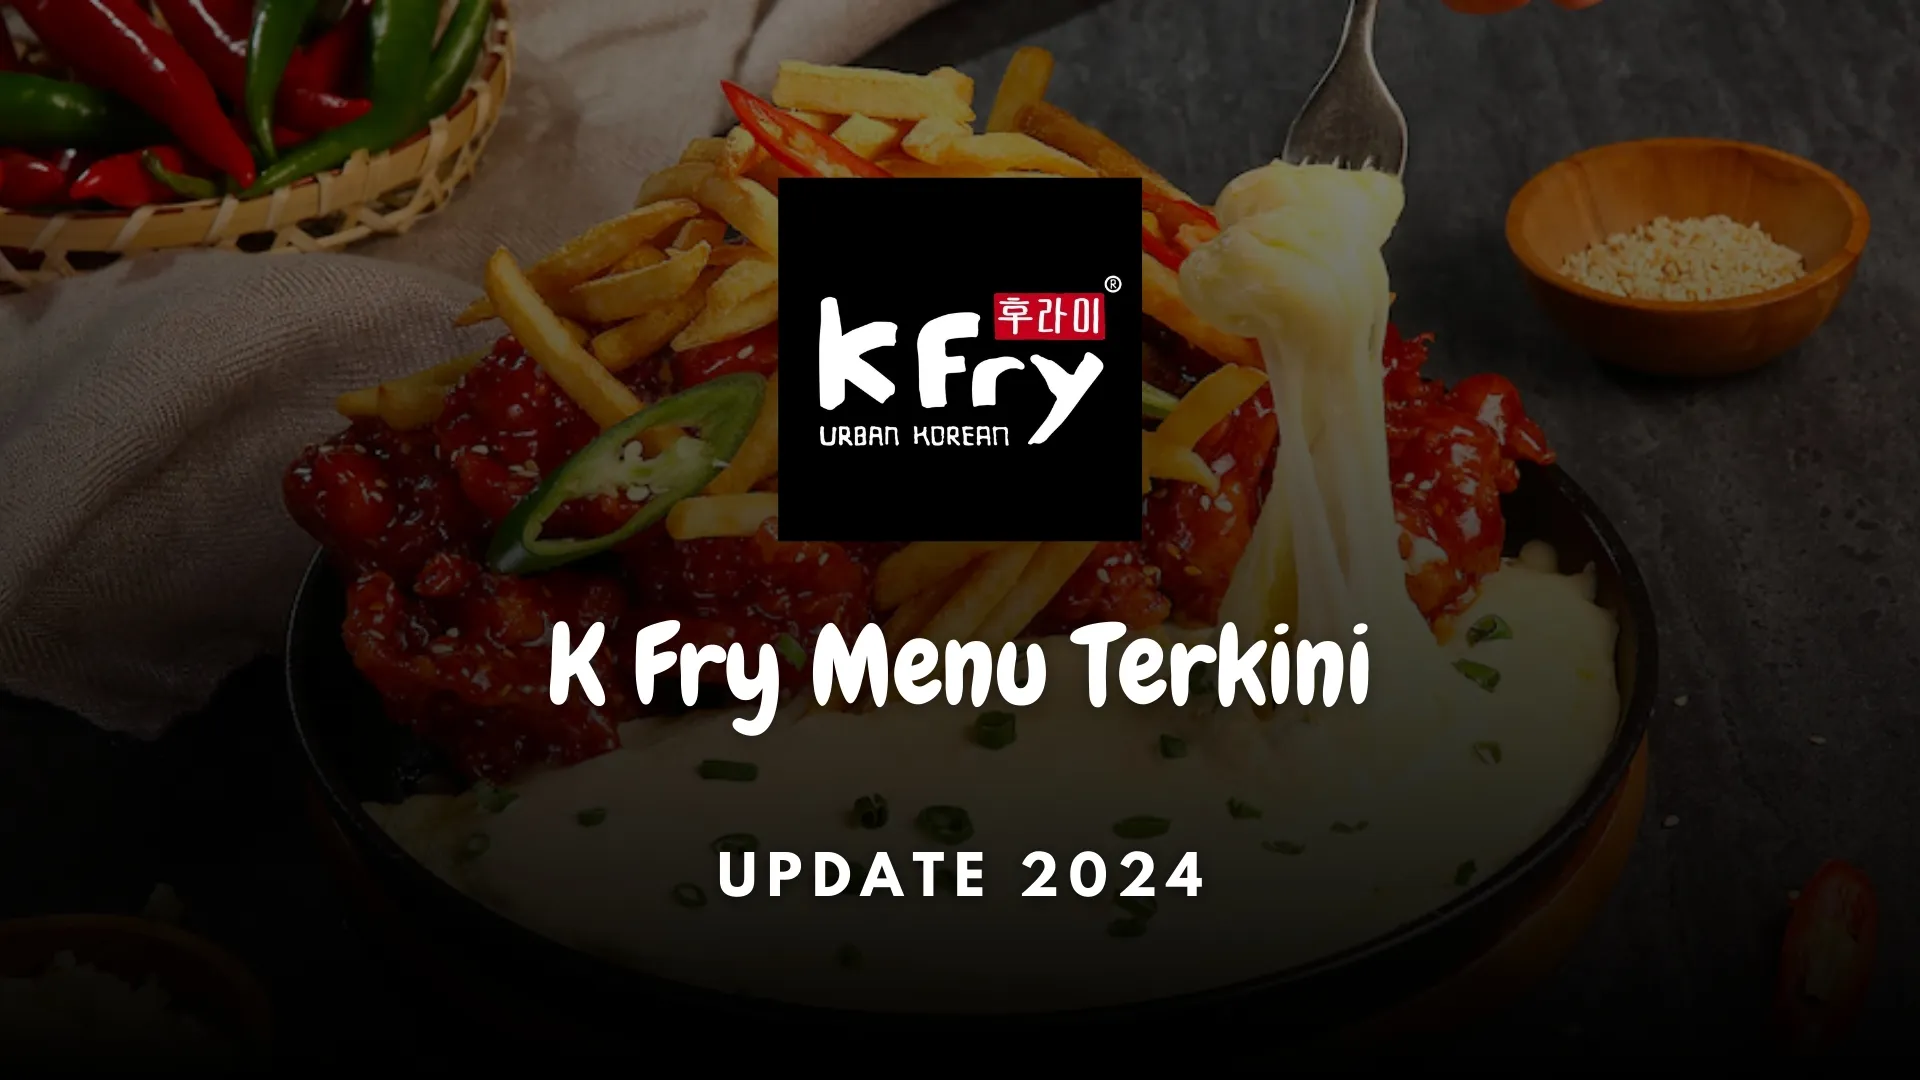 kfry menu terkini 2024